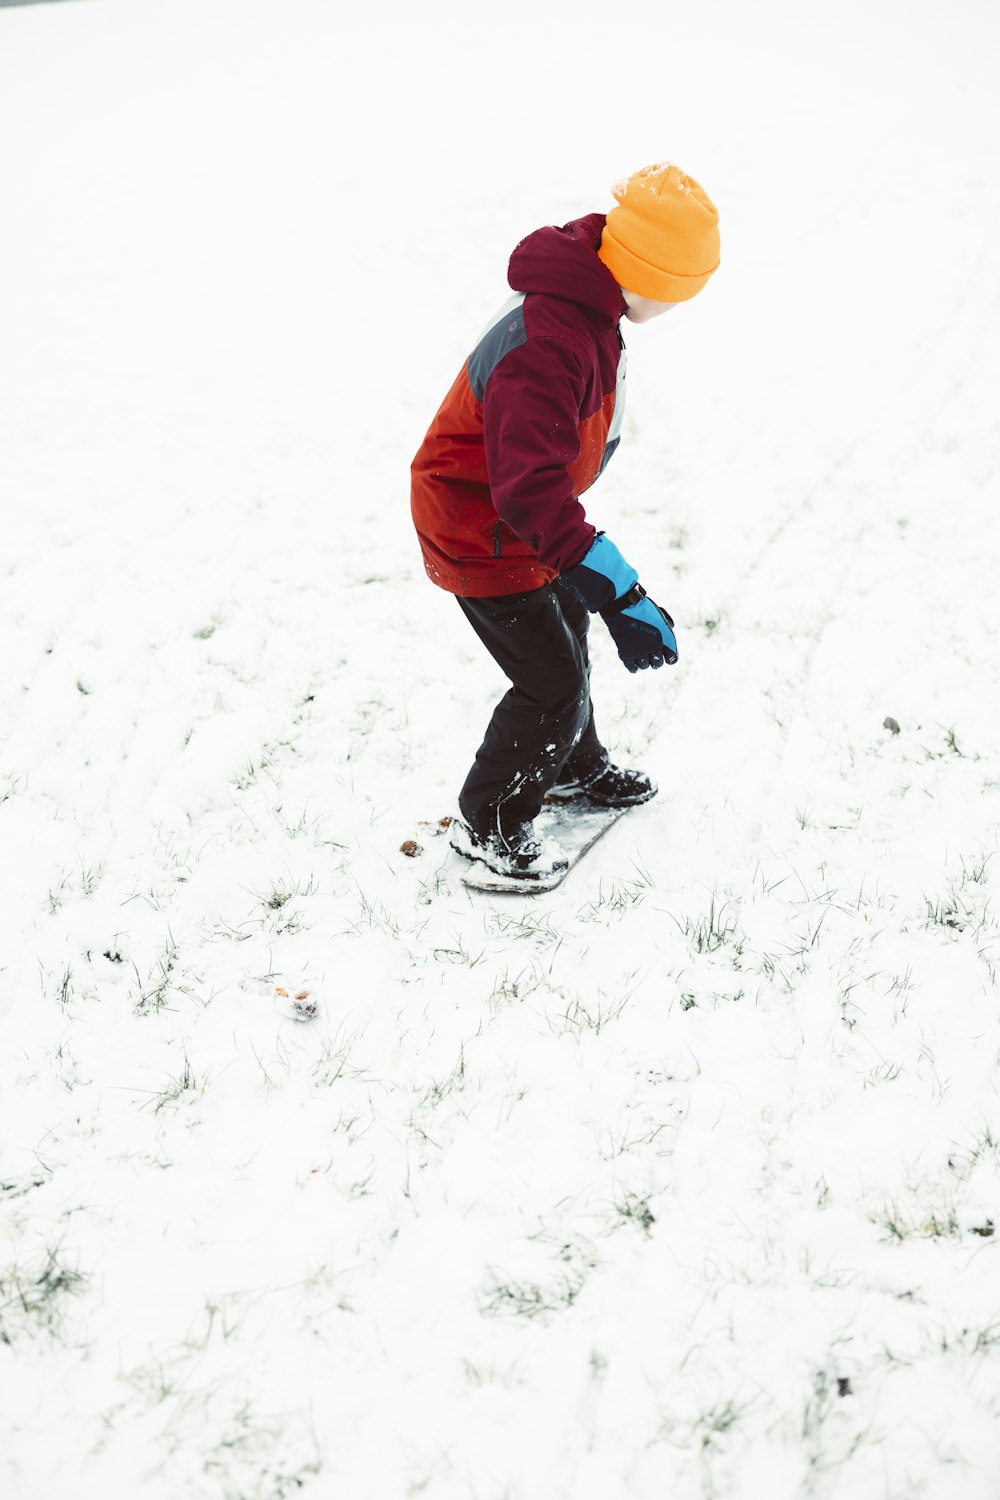 Ein kleiner Junge fährt mit dem Snowboard einen schneebedeckten Hang hinunter